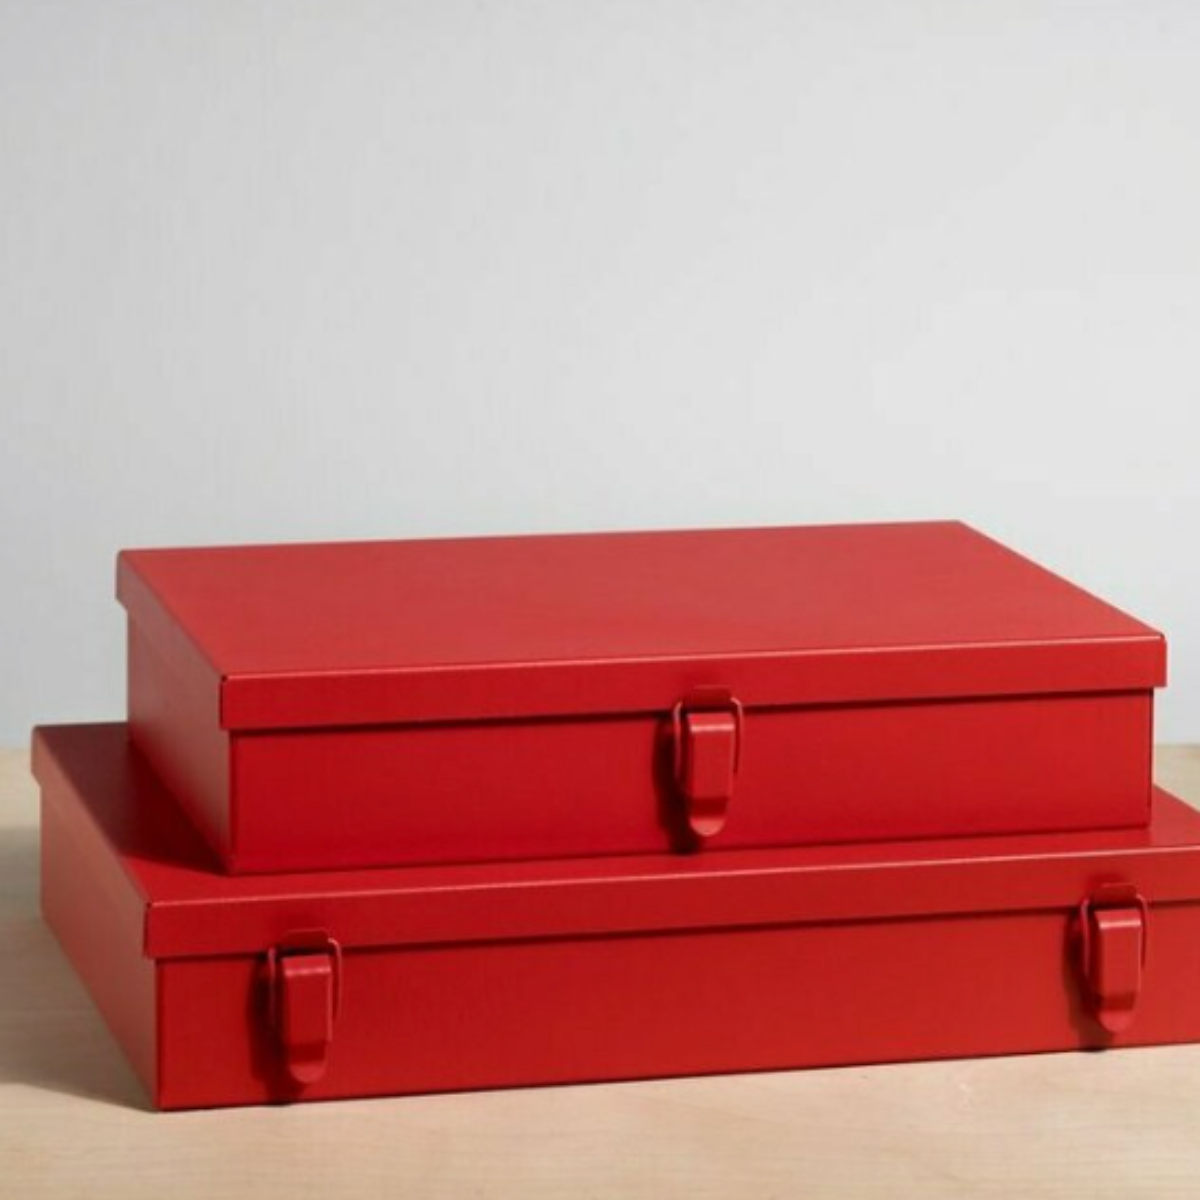 Metal Storage Boxes- set of 2